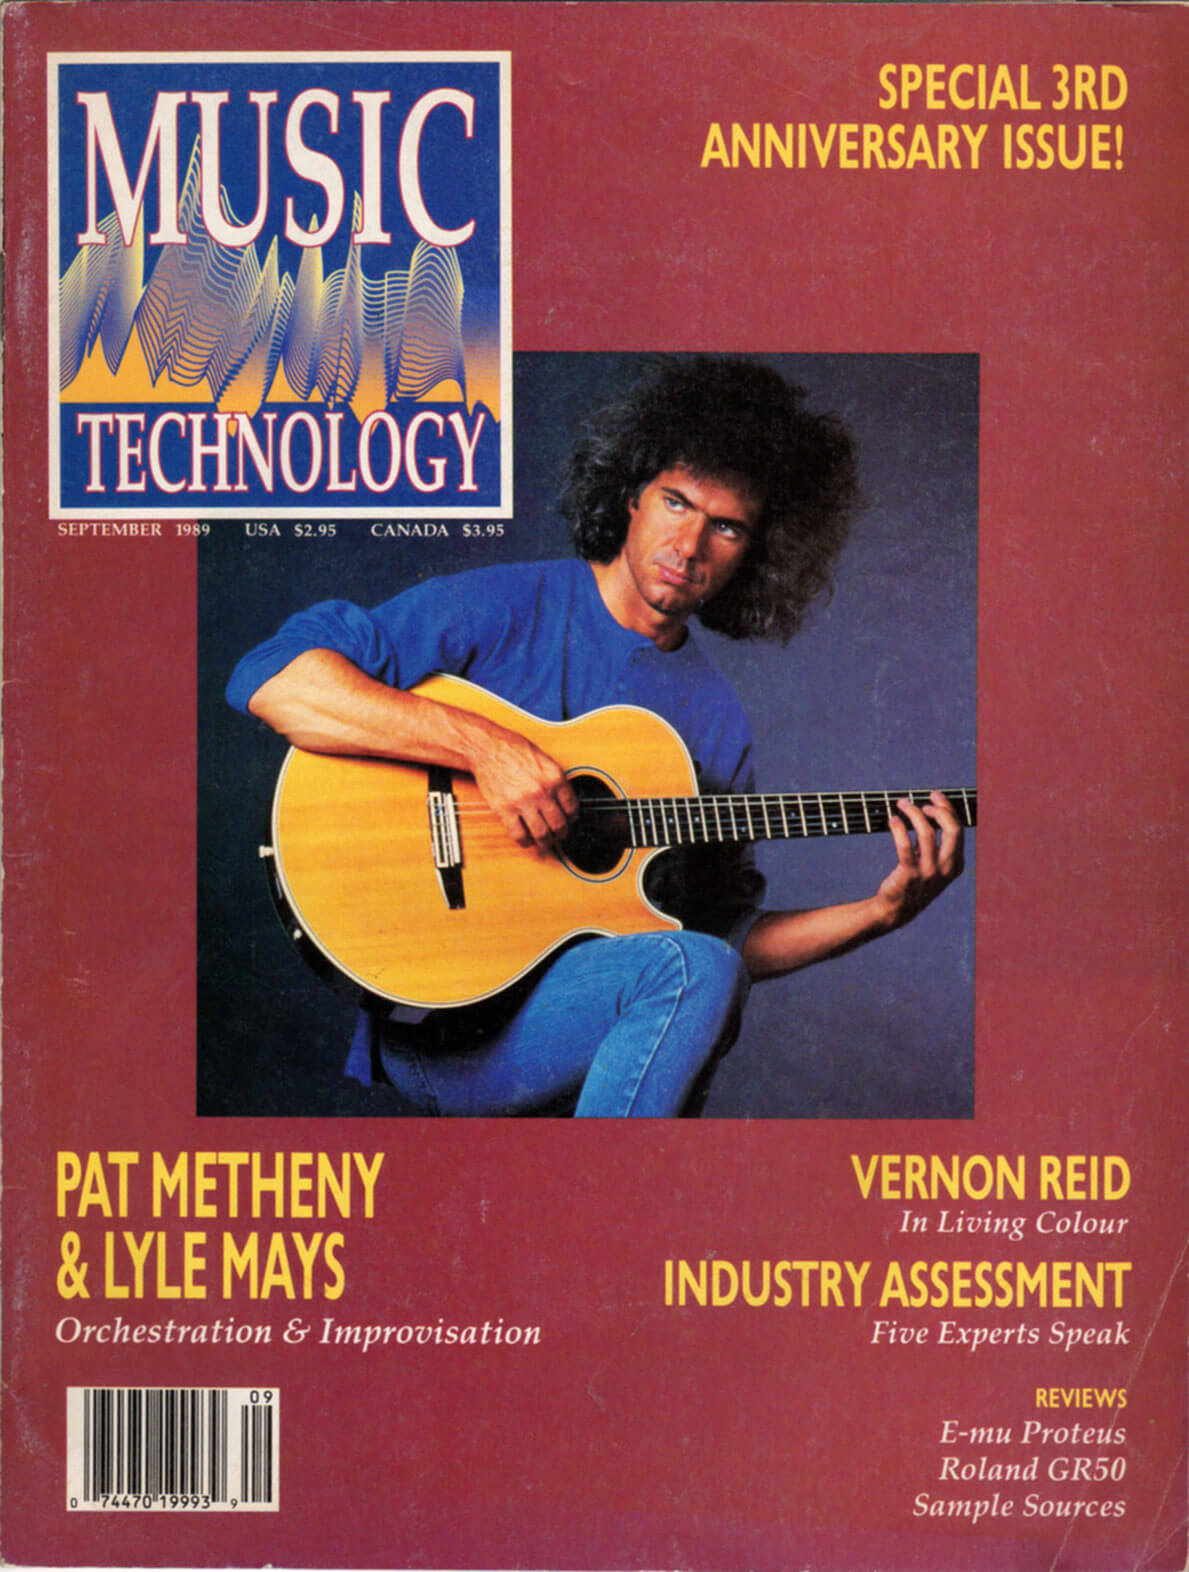 Pat Metheny - Cover Music Technology September 1989